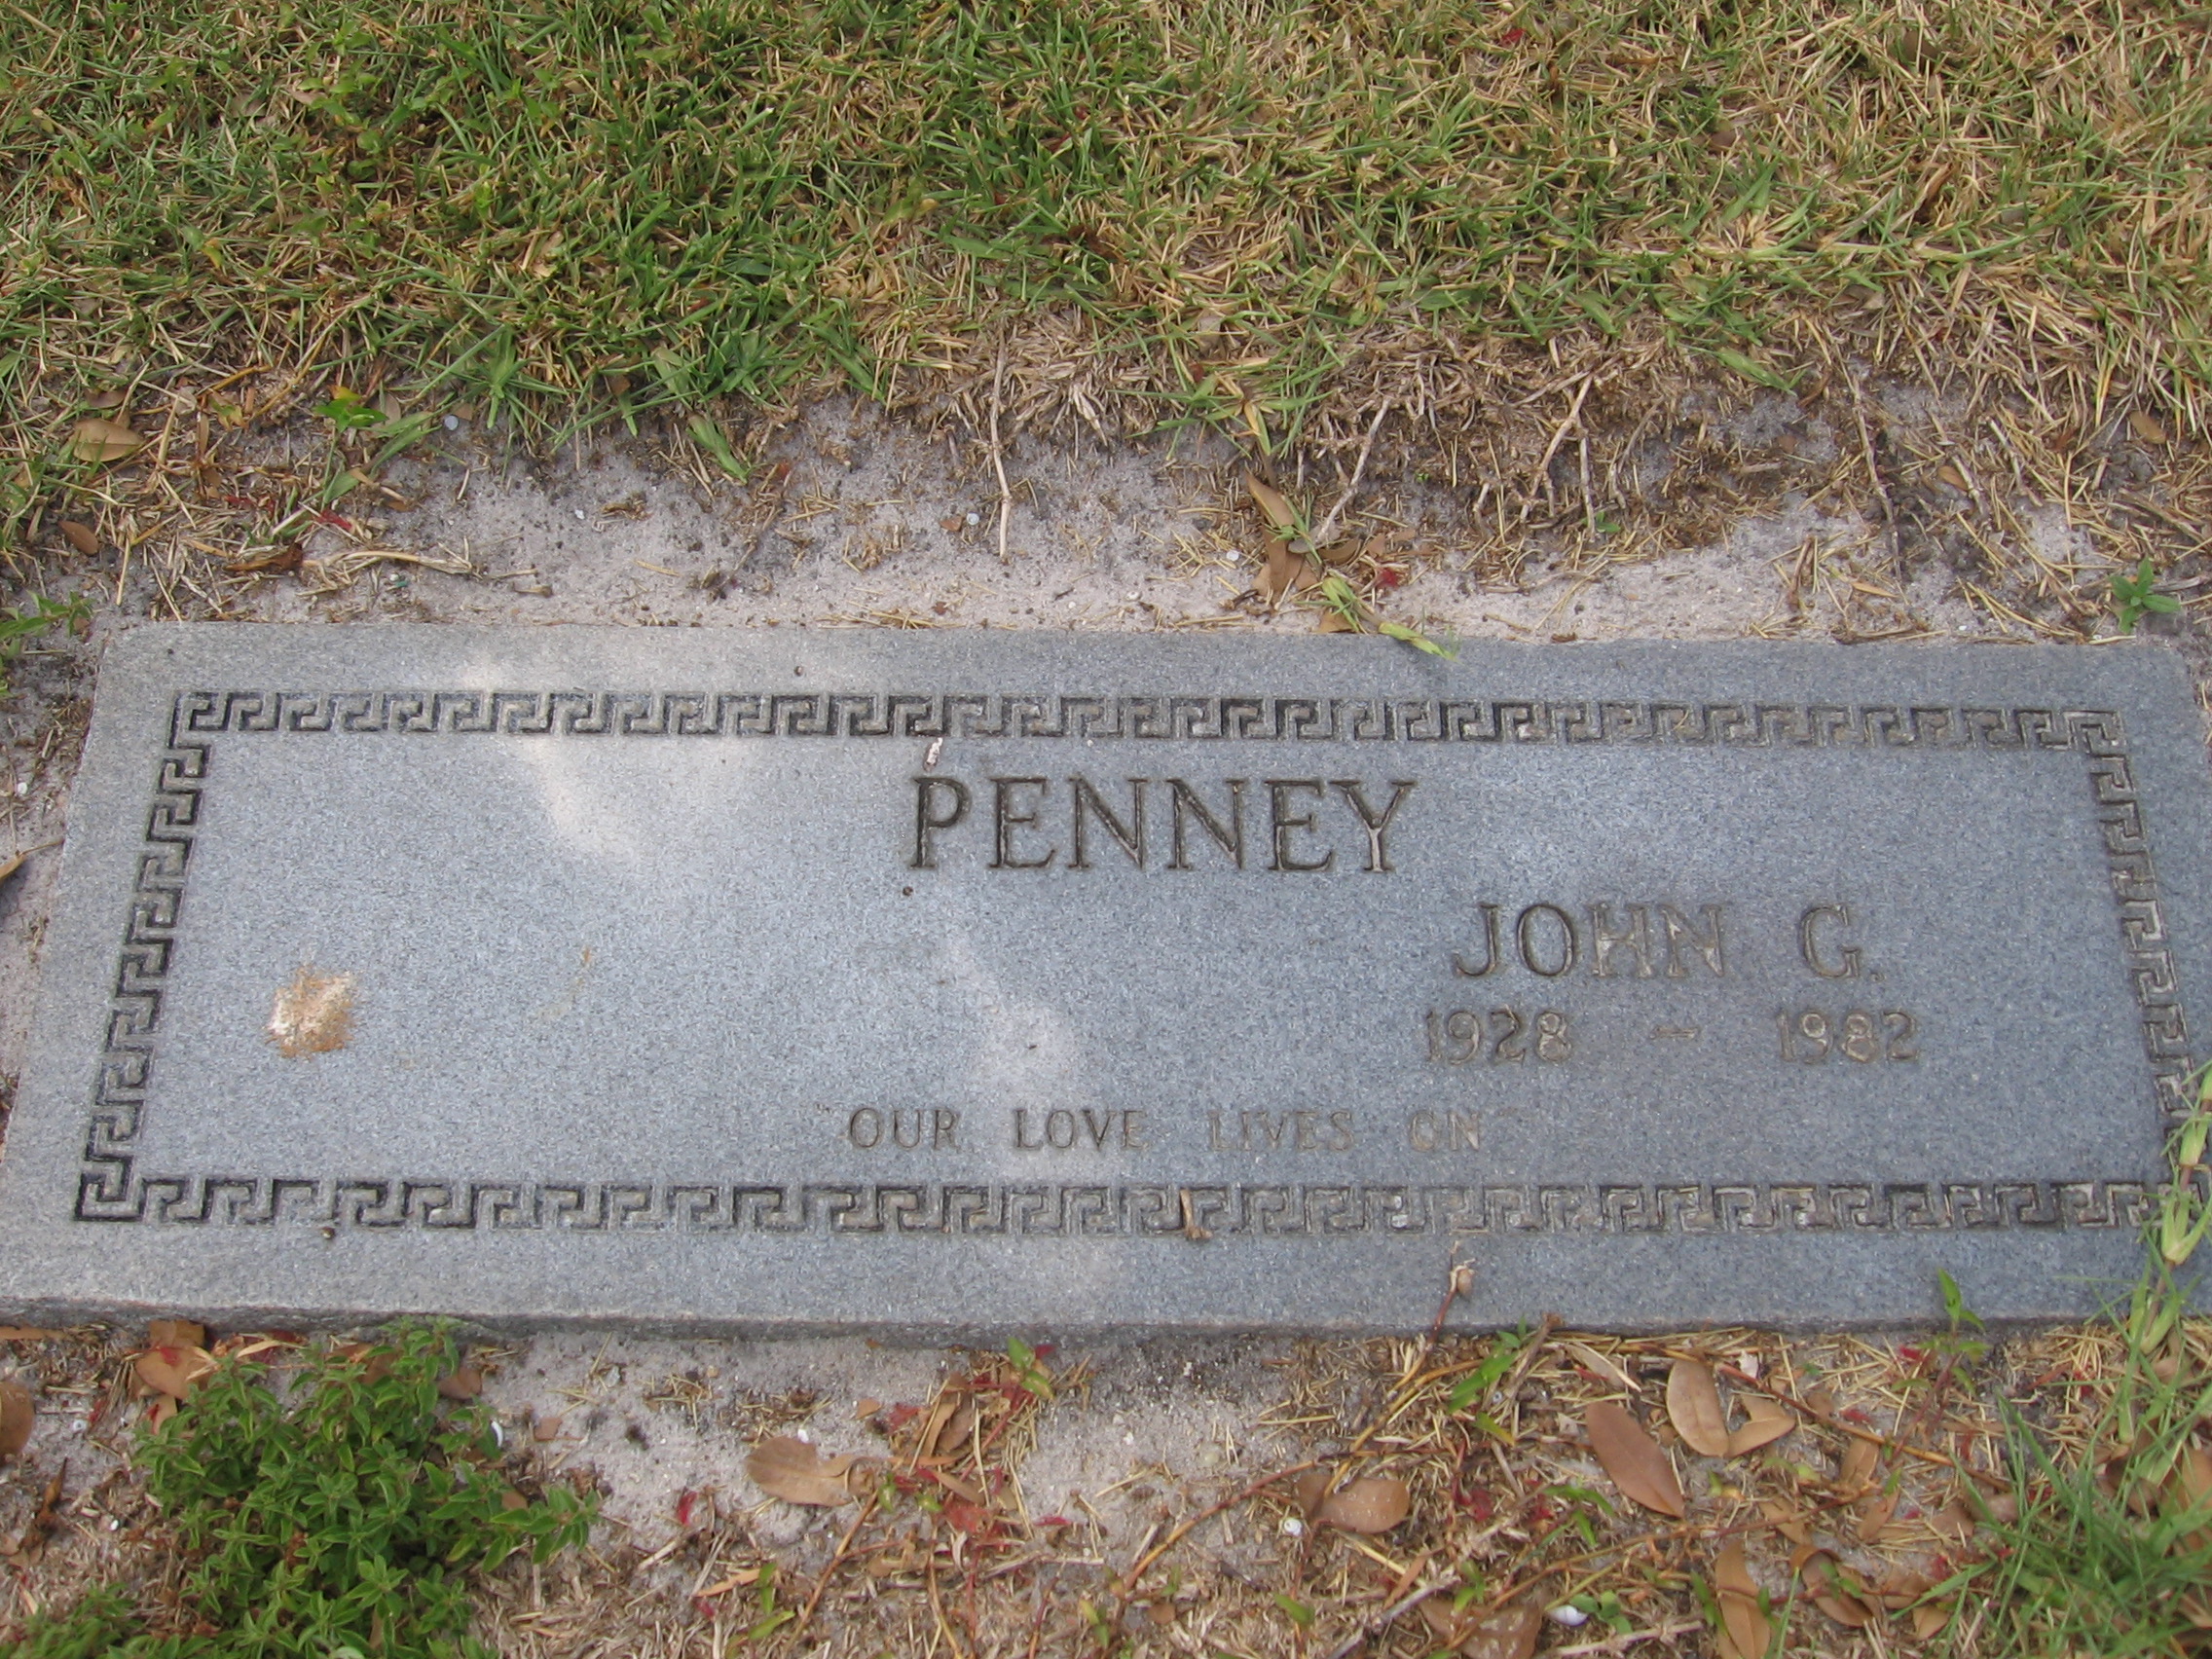 John G Penney